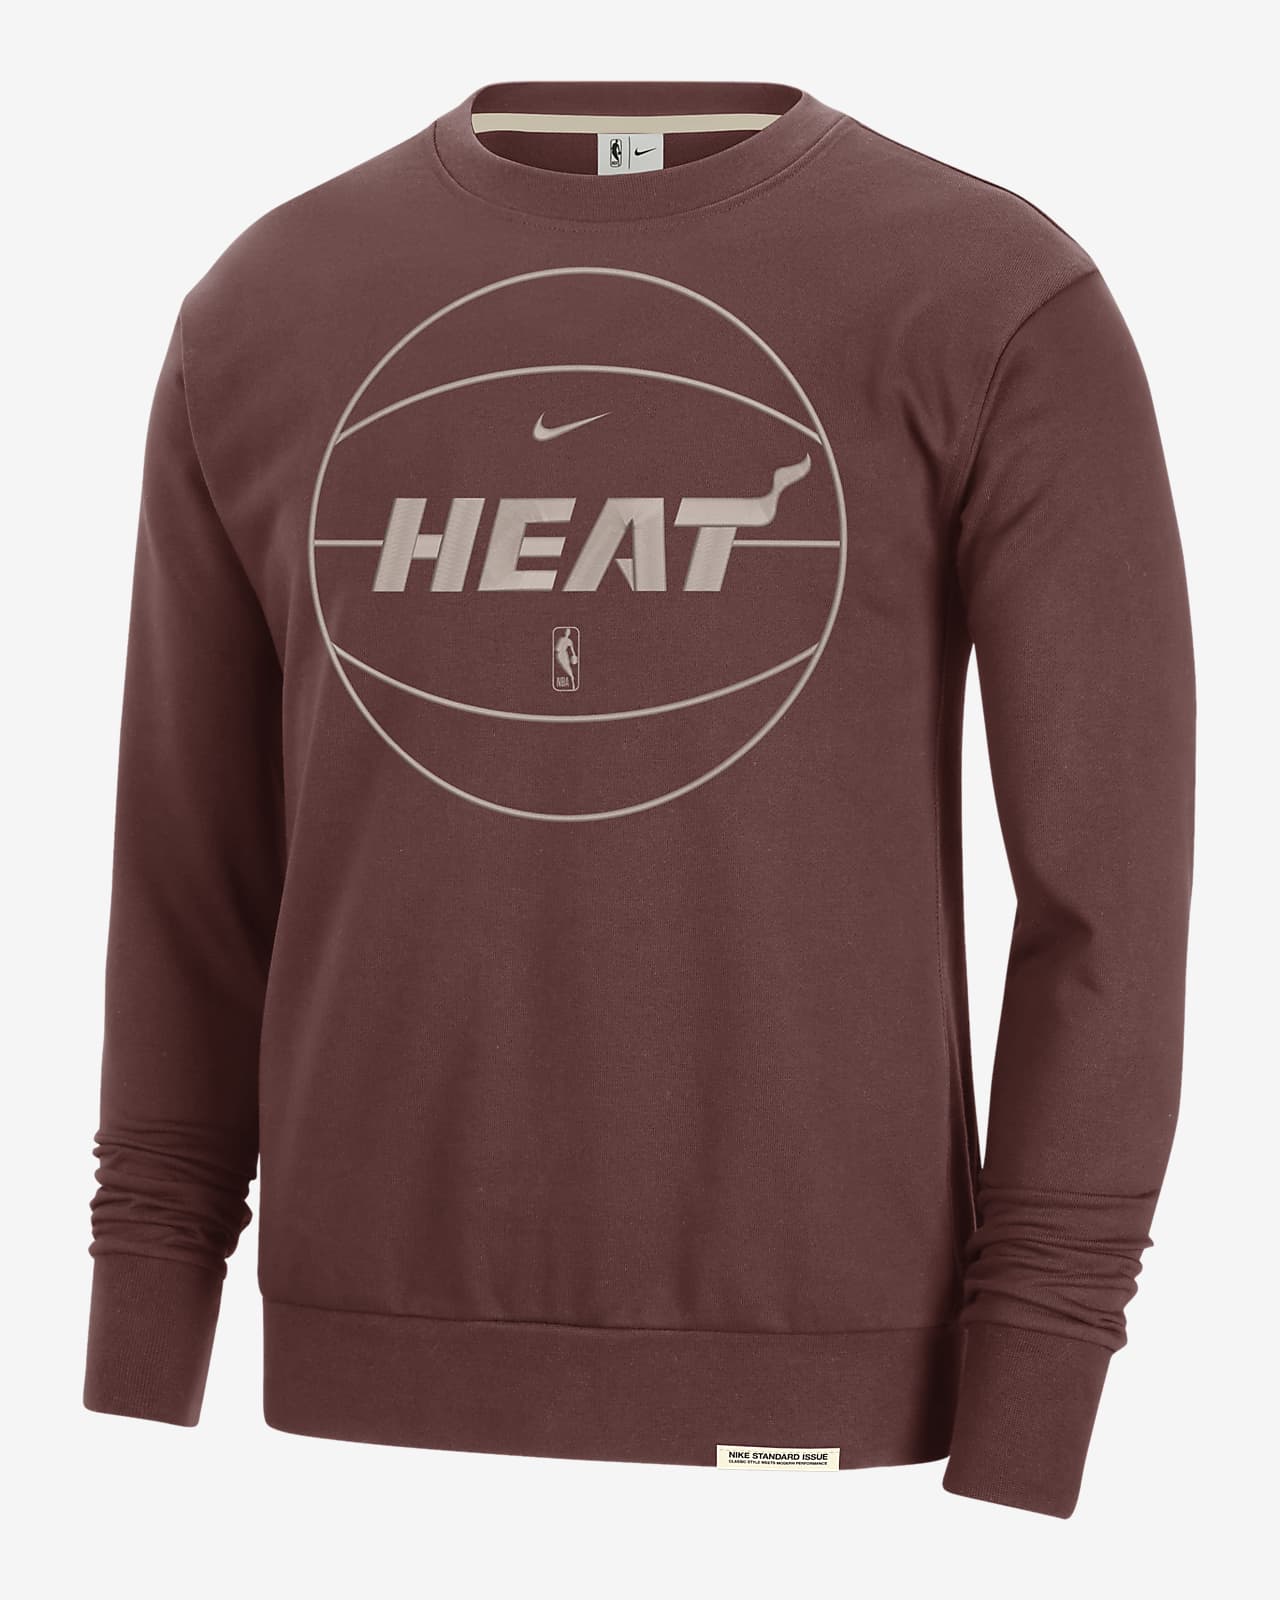 Miami Heat Standard Issue Men's Nike Dri-FIT NBA Sweatshirt